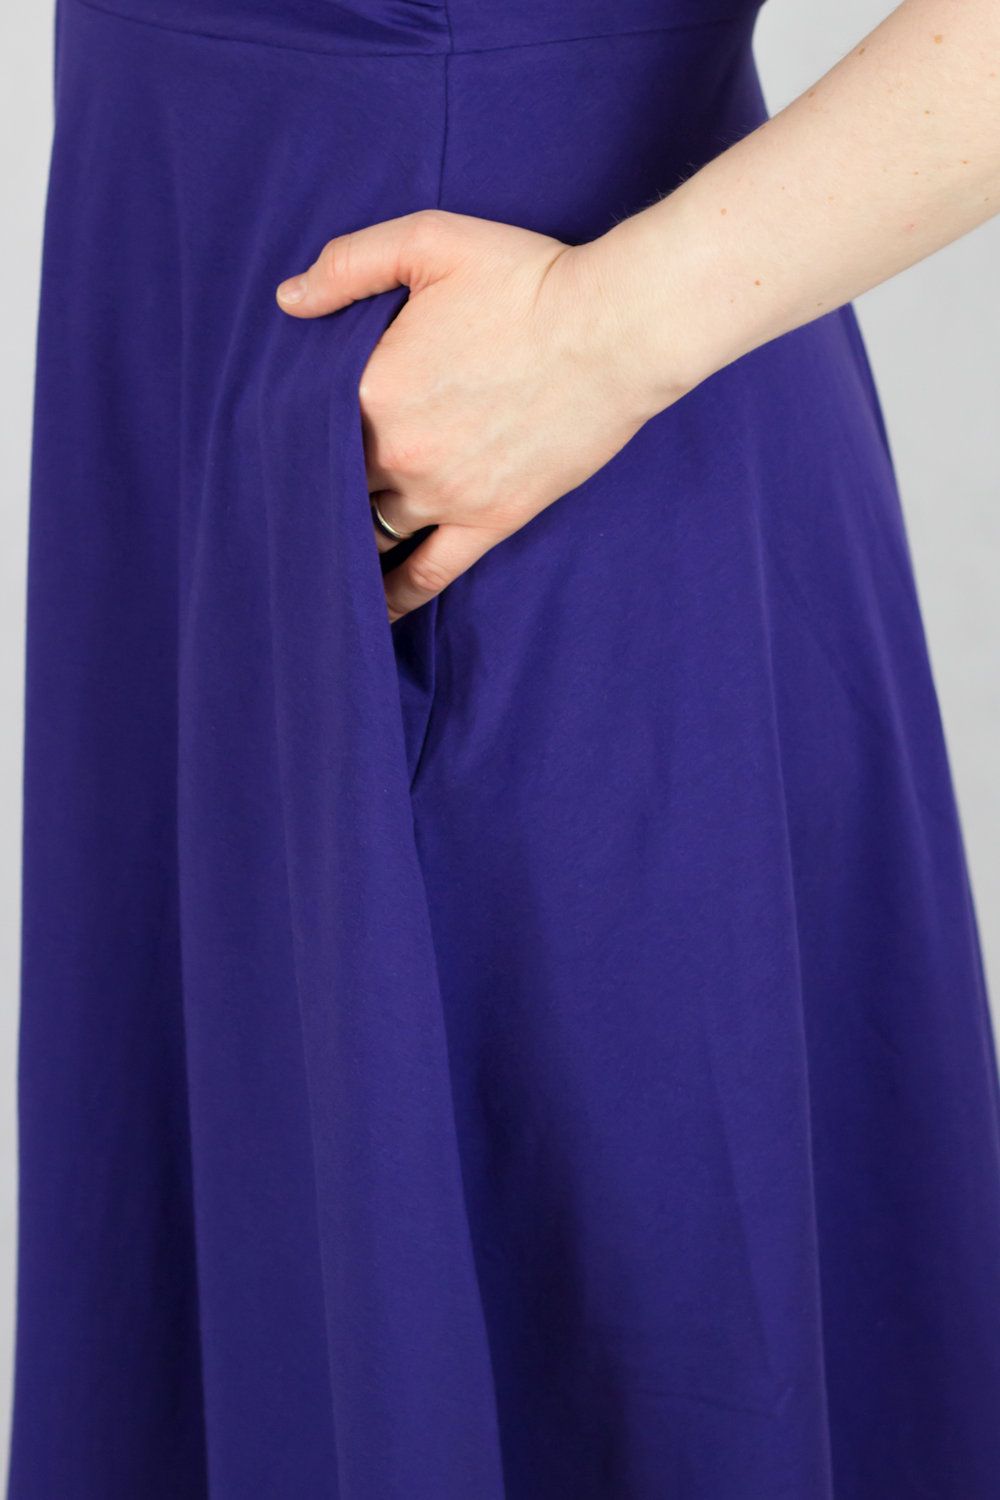 Urkye Koperta Dress with Short Sleeves Rose Violet